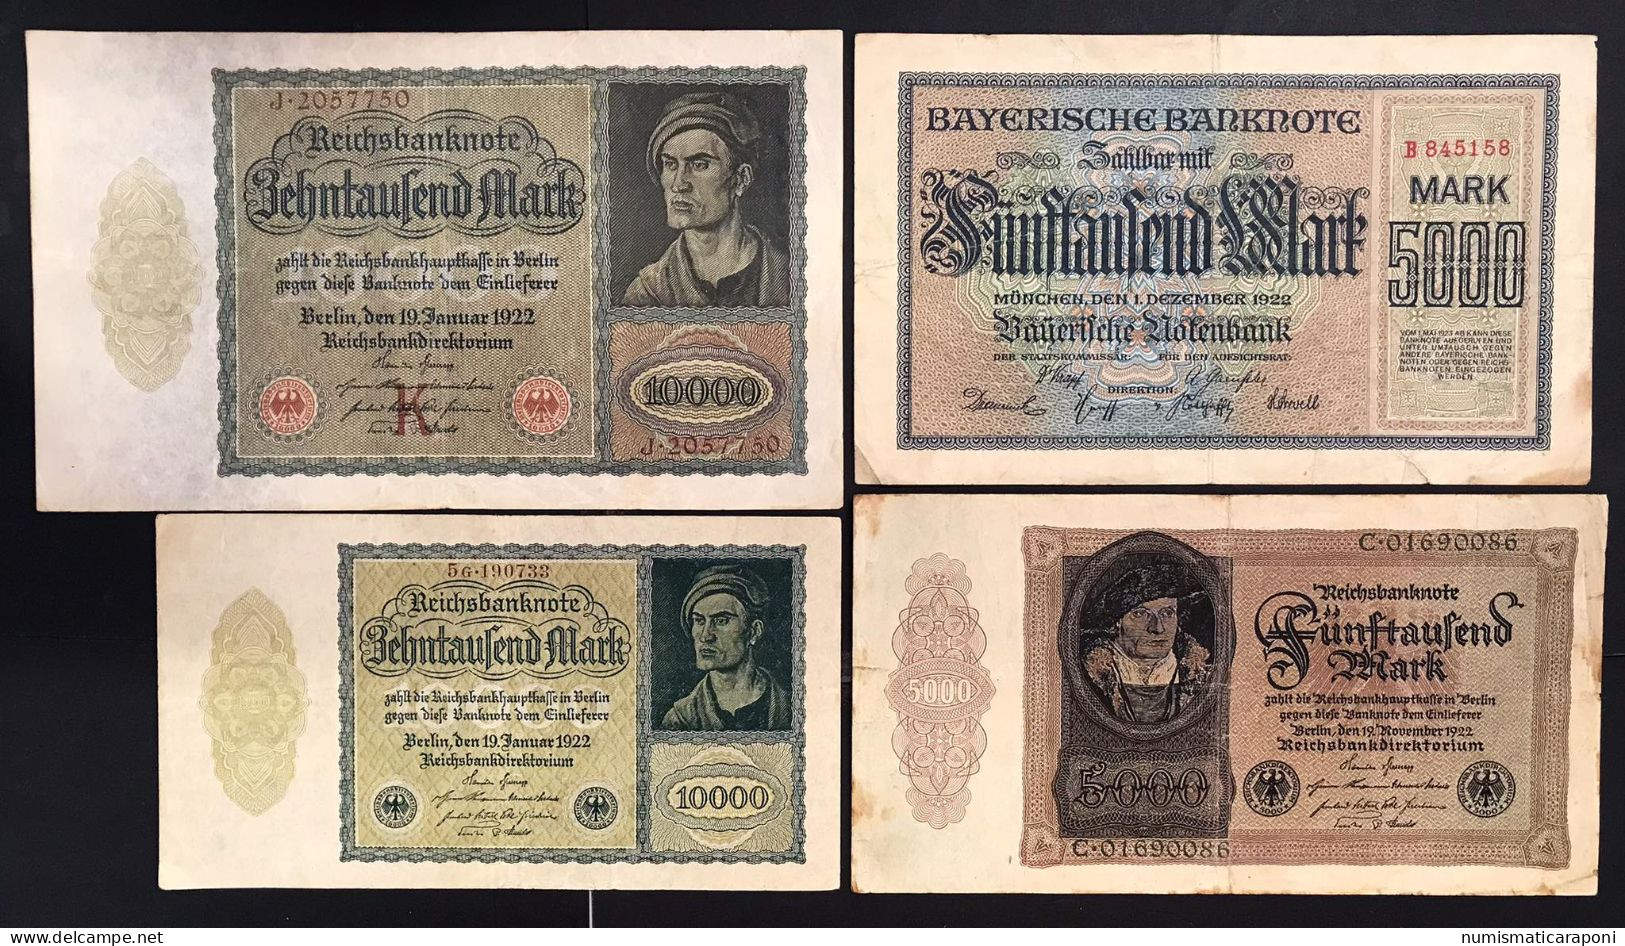 Germany Germania  25 Banconote Da 1 A 50000000 Mark  LOTTO 4597 - Colecciones